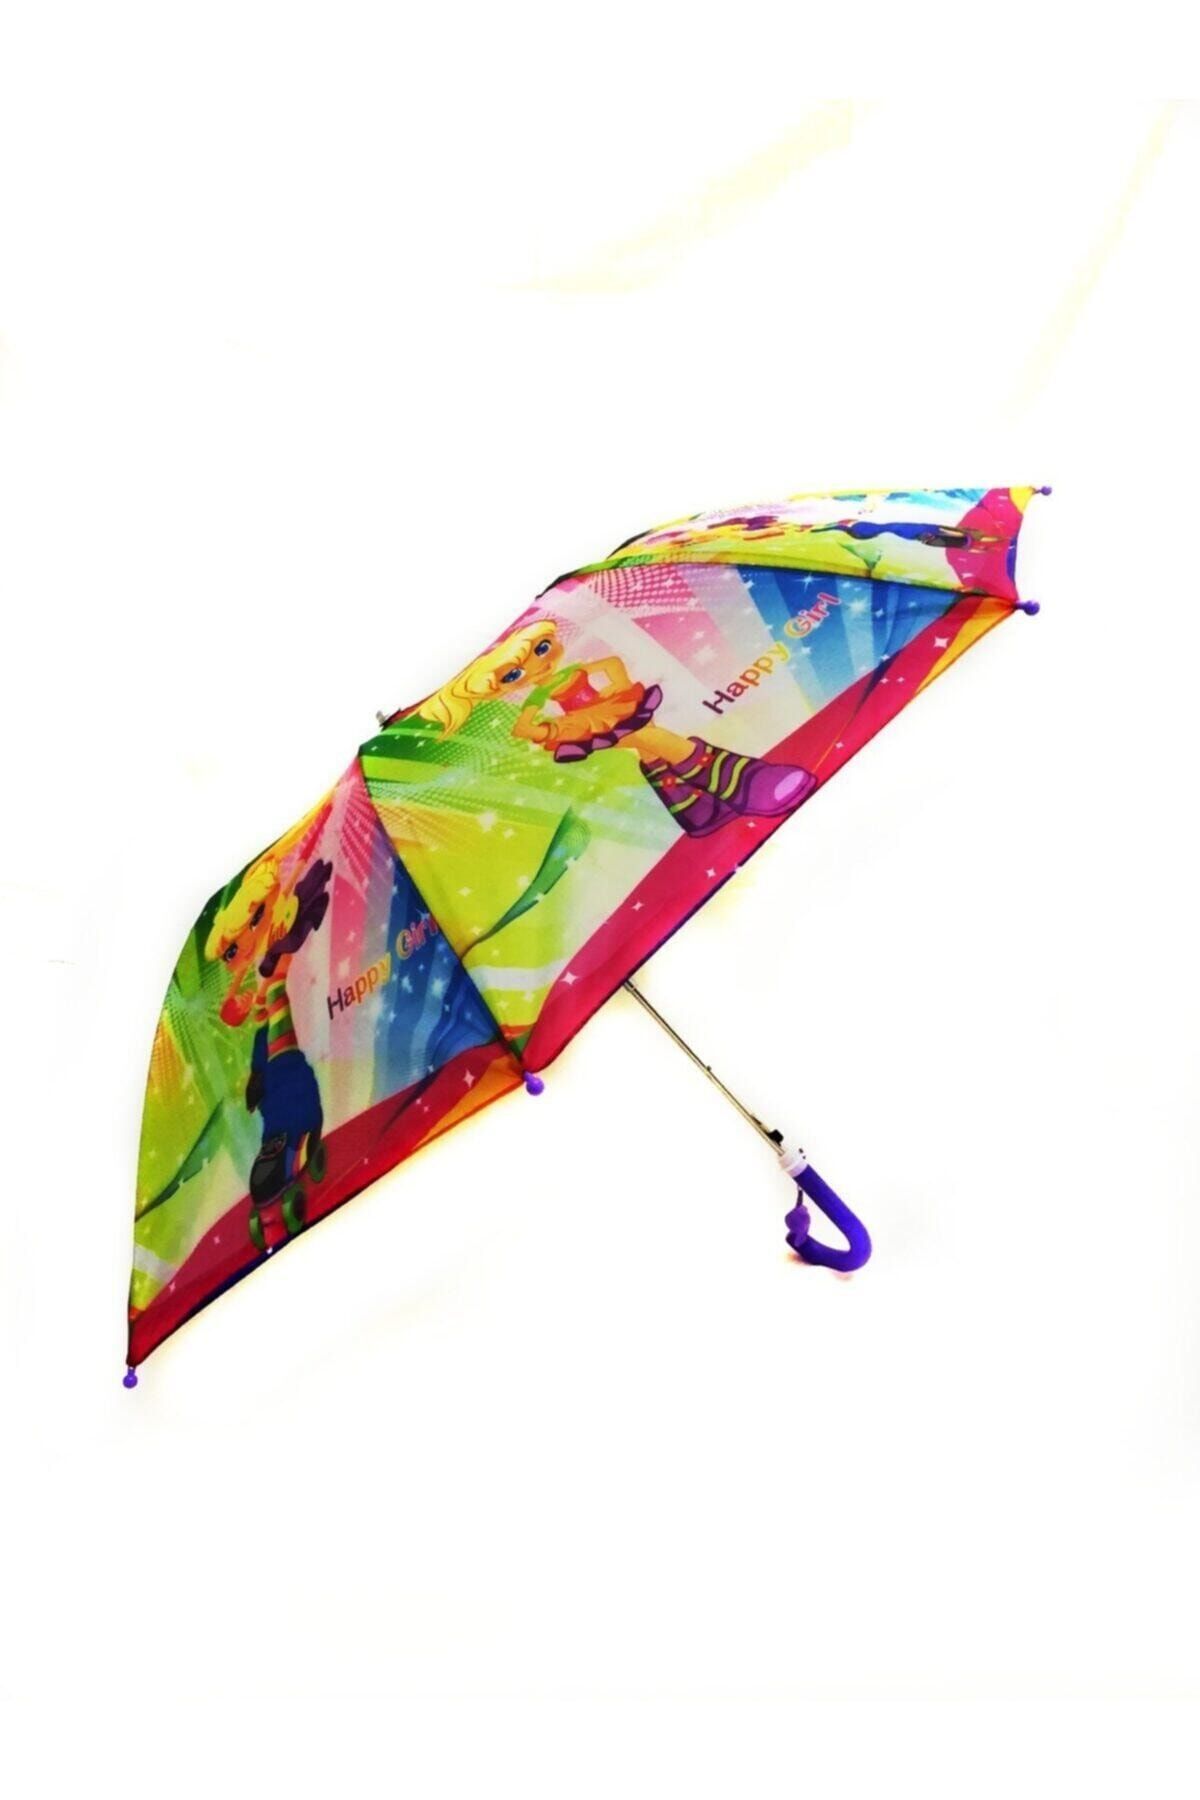 İstocToptan Kız Çocuk Şemsiyesi, Yarı Otomatik Mekanizma Küçük Boy 43 Cm